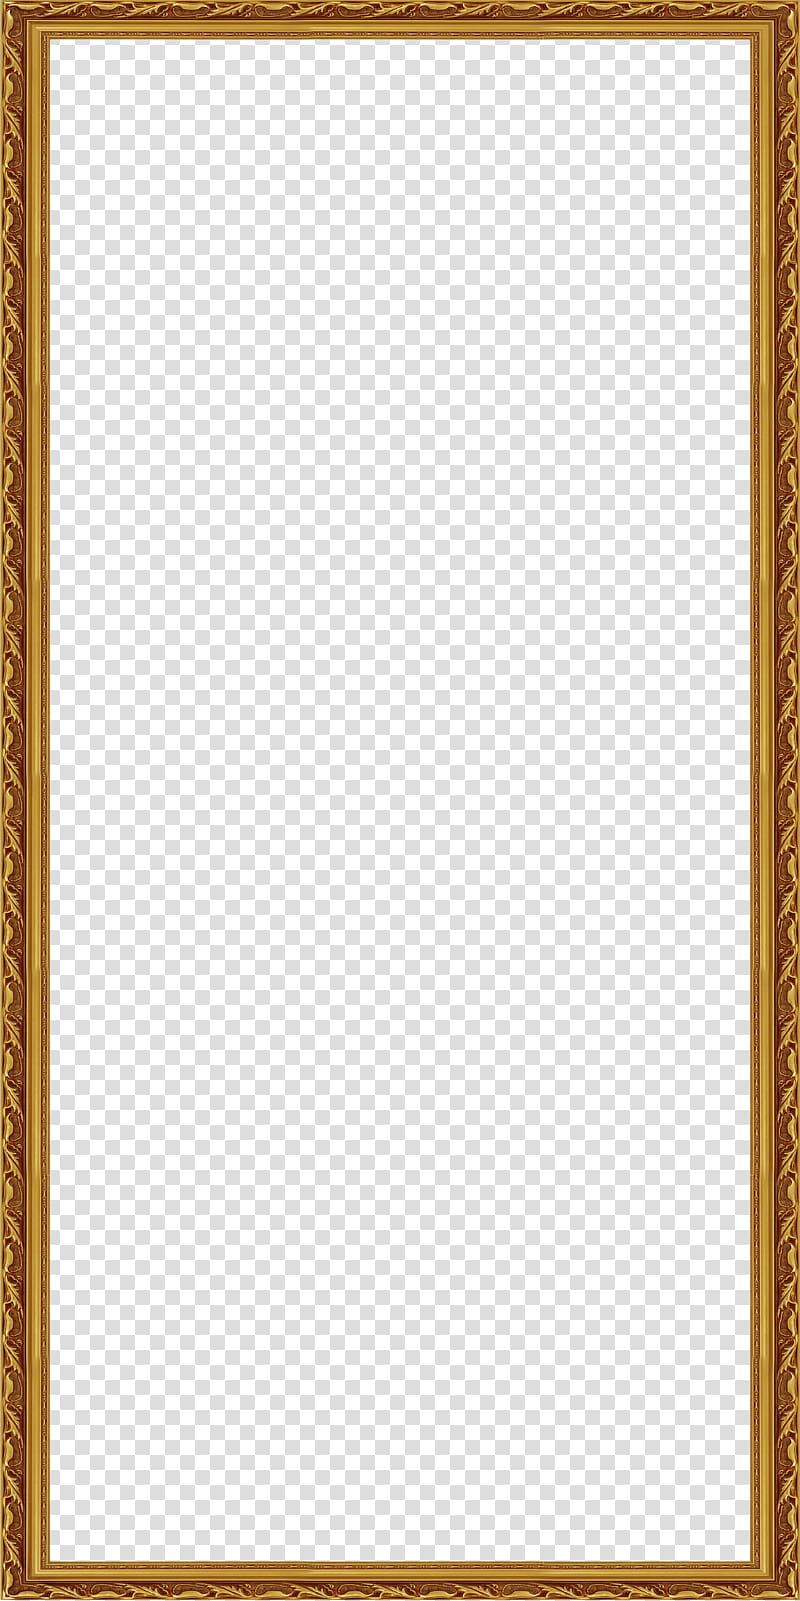 rectangular brown frame illustration, frame Pattern, European Border transparent background PNG clipart